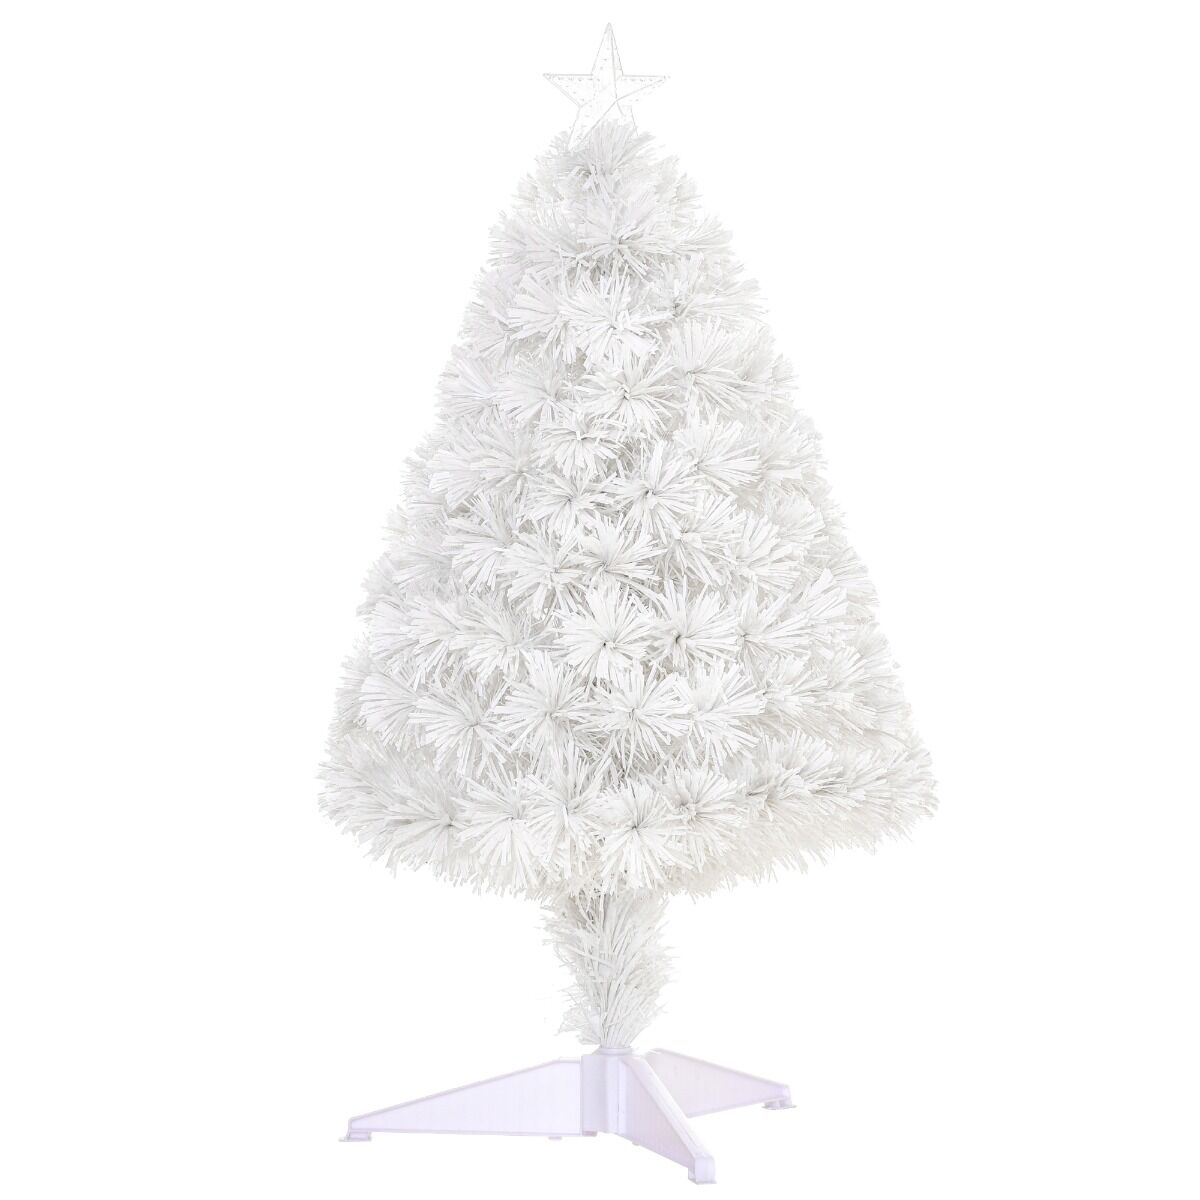 HOMCOM Tabletop White Christmas Tree 2.5ft Pre-Lit Fiber Optic with Stand for Home Decoration White   Aosom.com